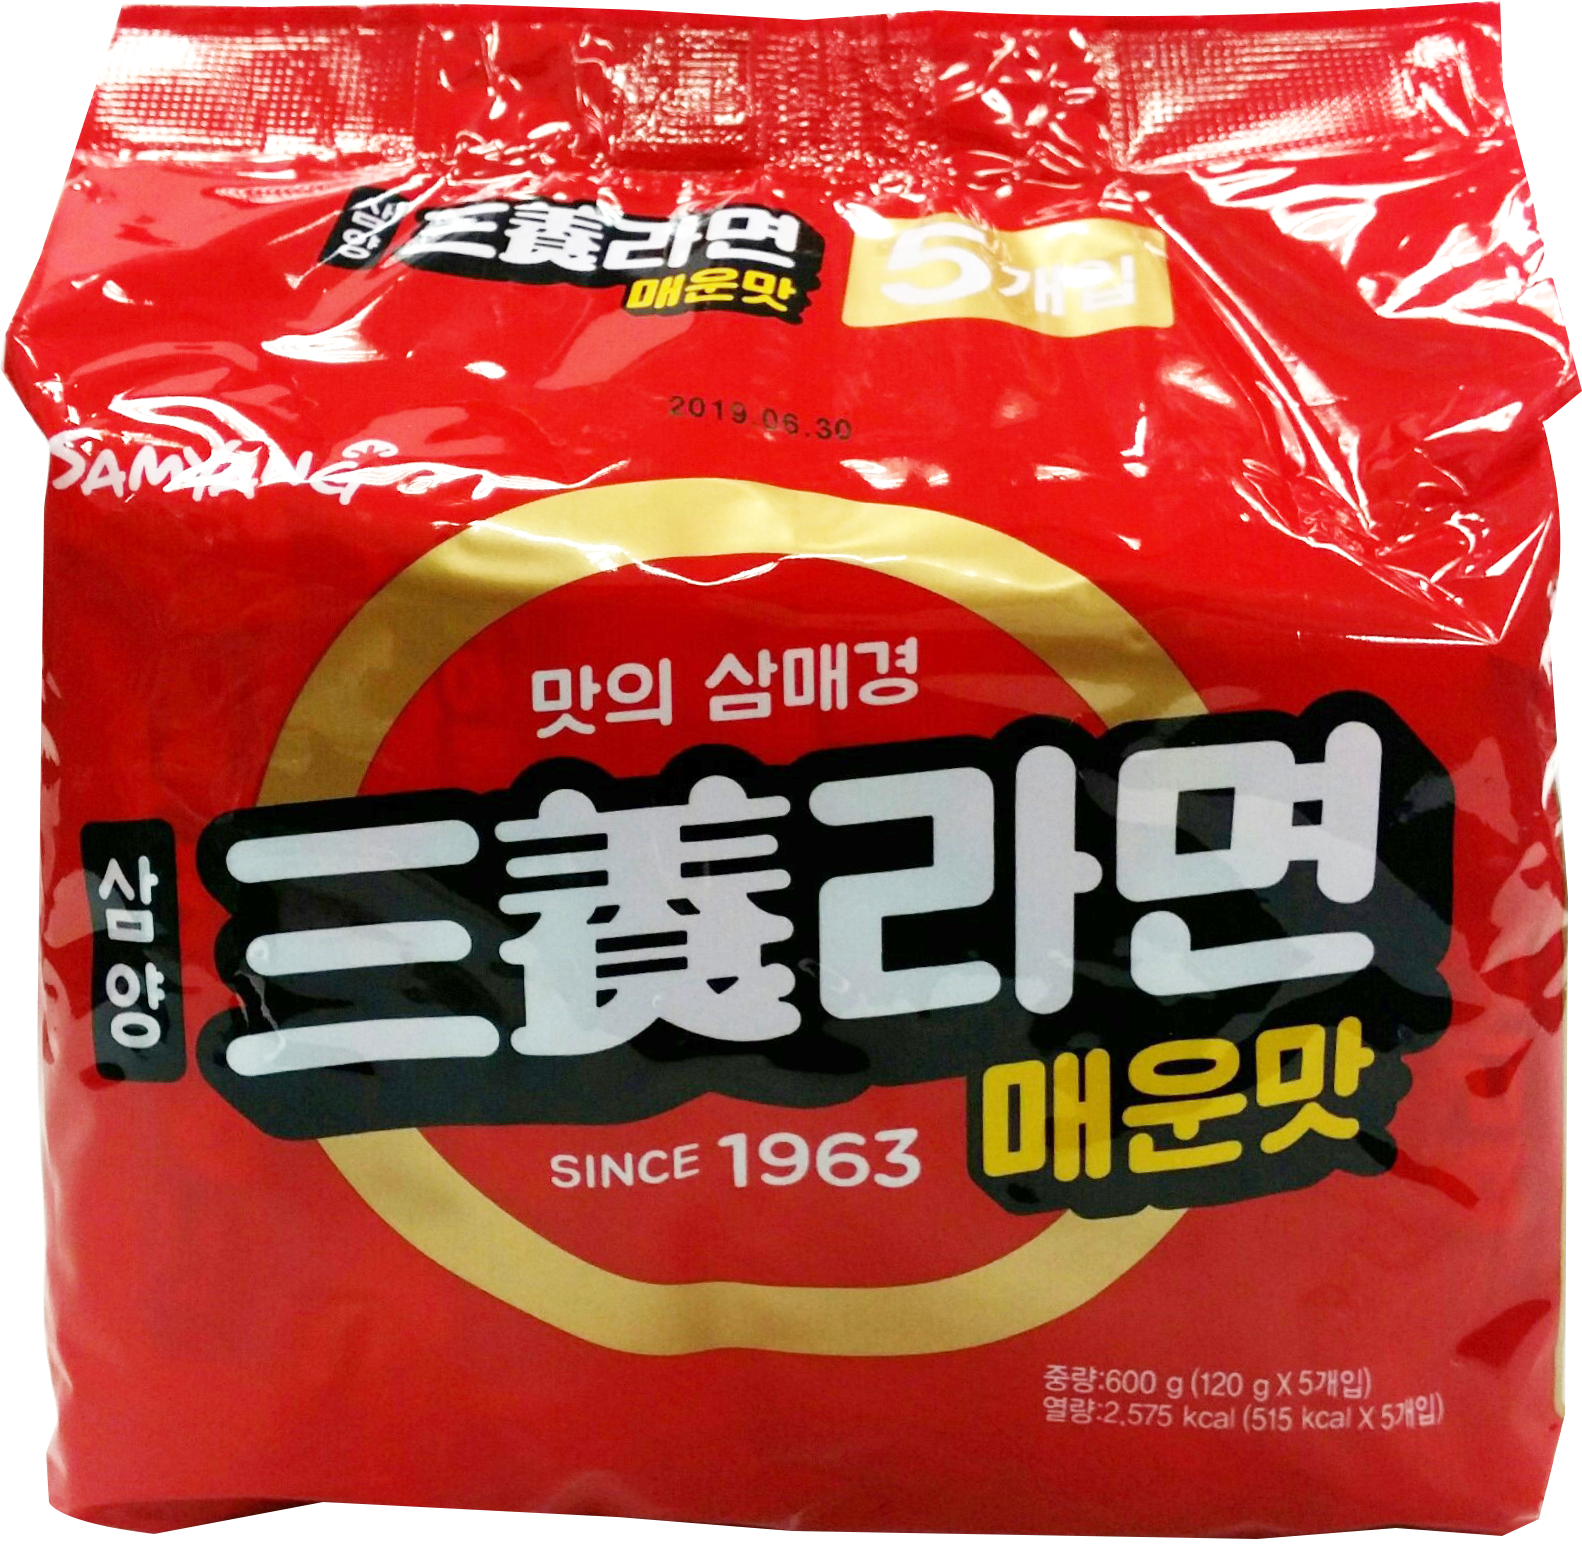 三養經典拉麵(辛辣風味) 삼양라면매운맛 120g/5包